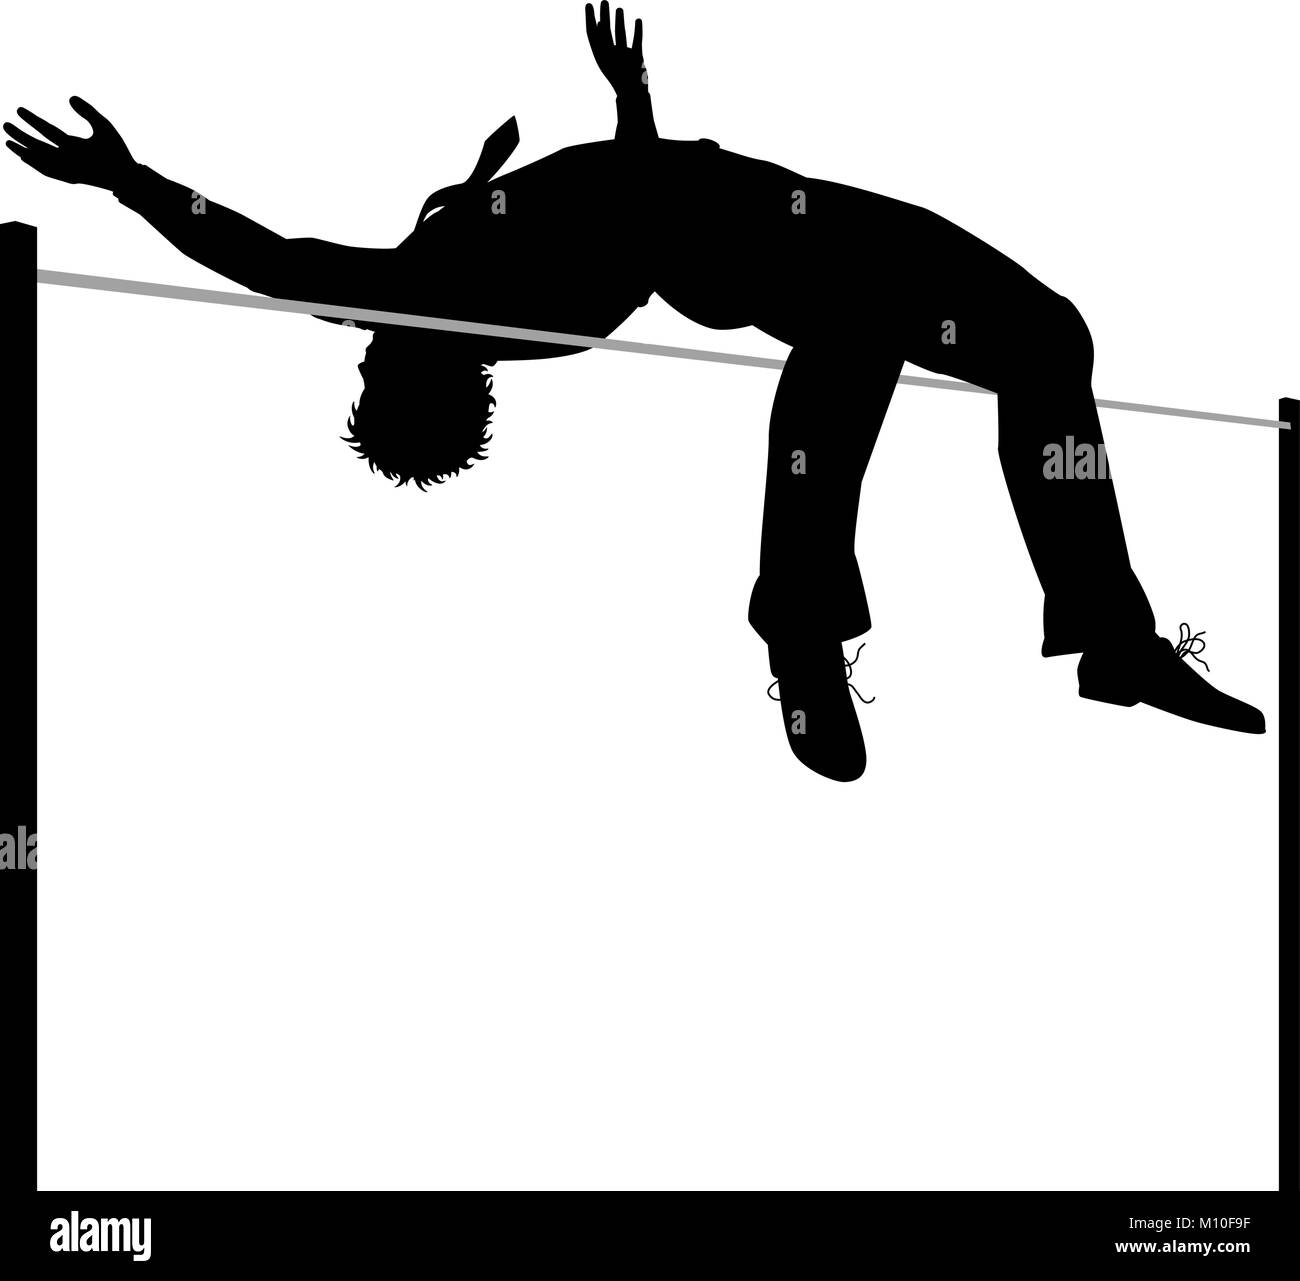 Silueta ilustración vectorial editable de un empresario borrar un salto de altura Ilustración del Vector